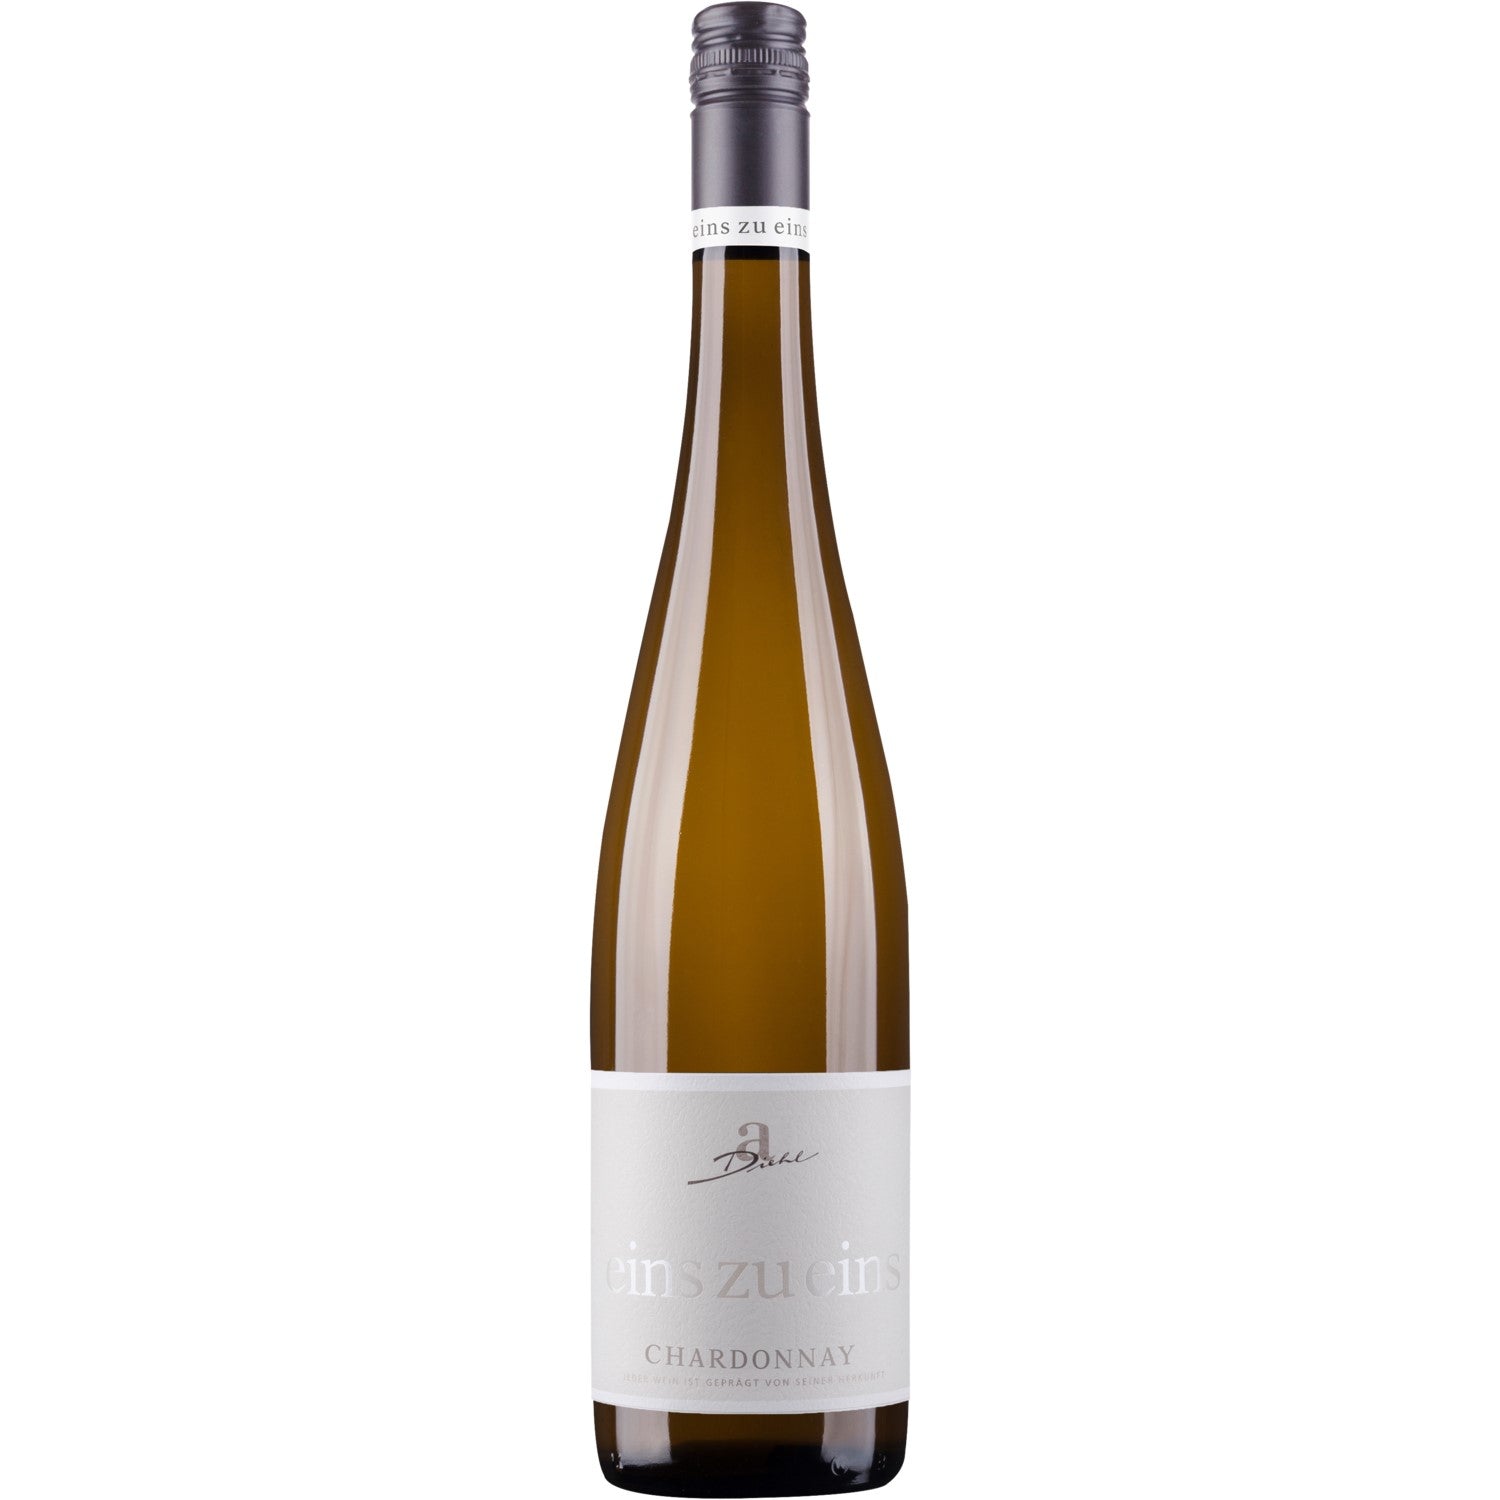 A. Diehl Chardonnay eins zu eins Kabinett Weißwein Wein trocken (3 x 0.75l) - Versanel - Wein